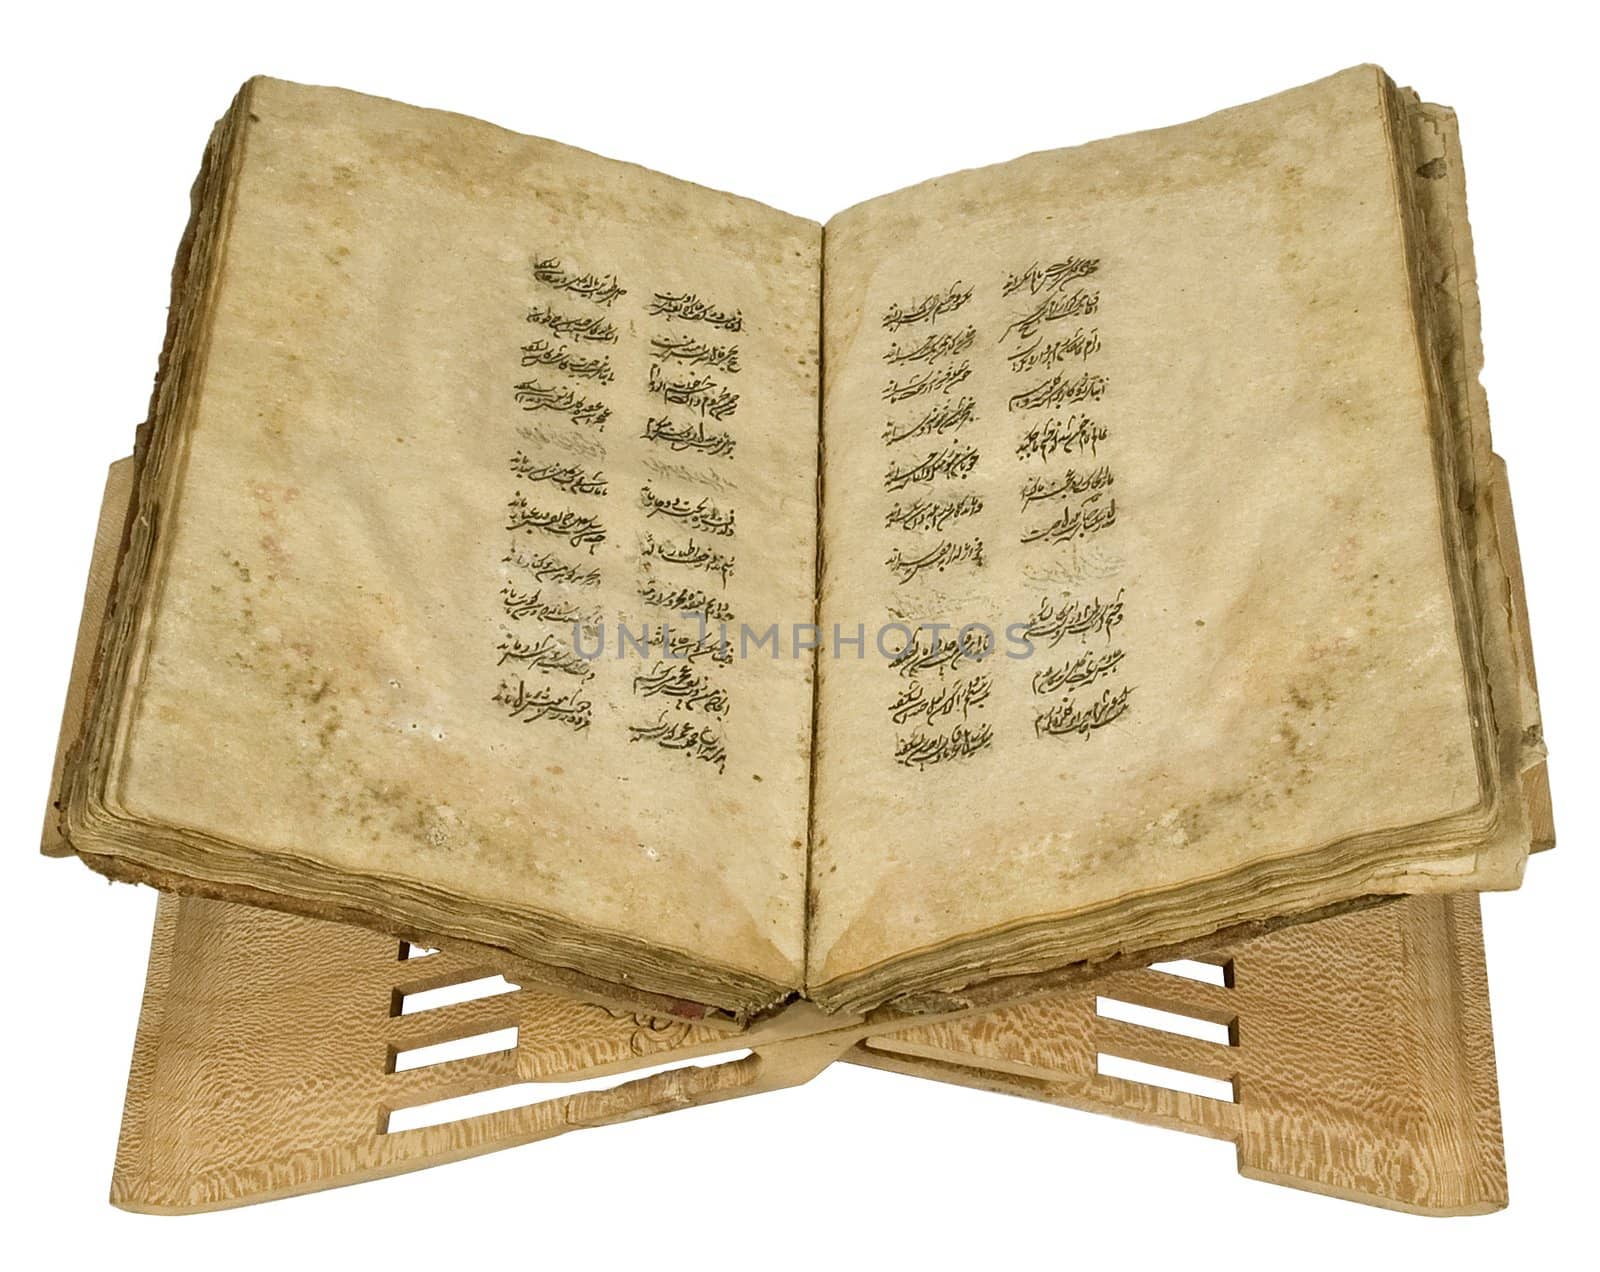 Koran. 13 century A.D.